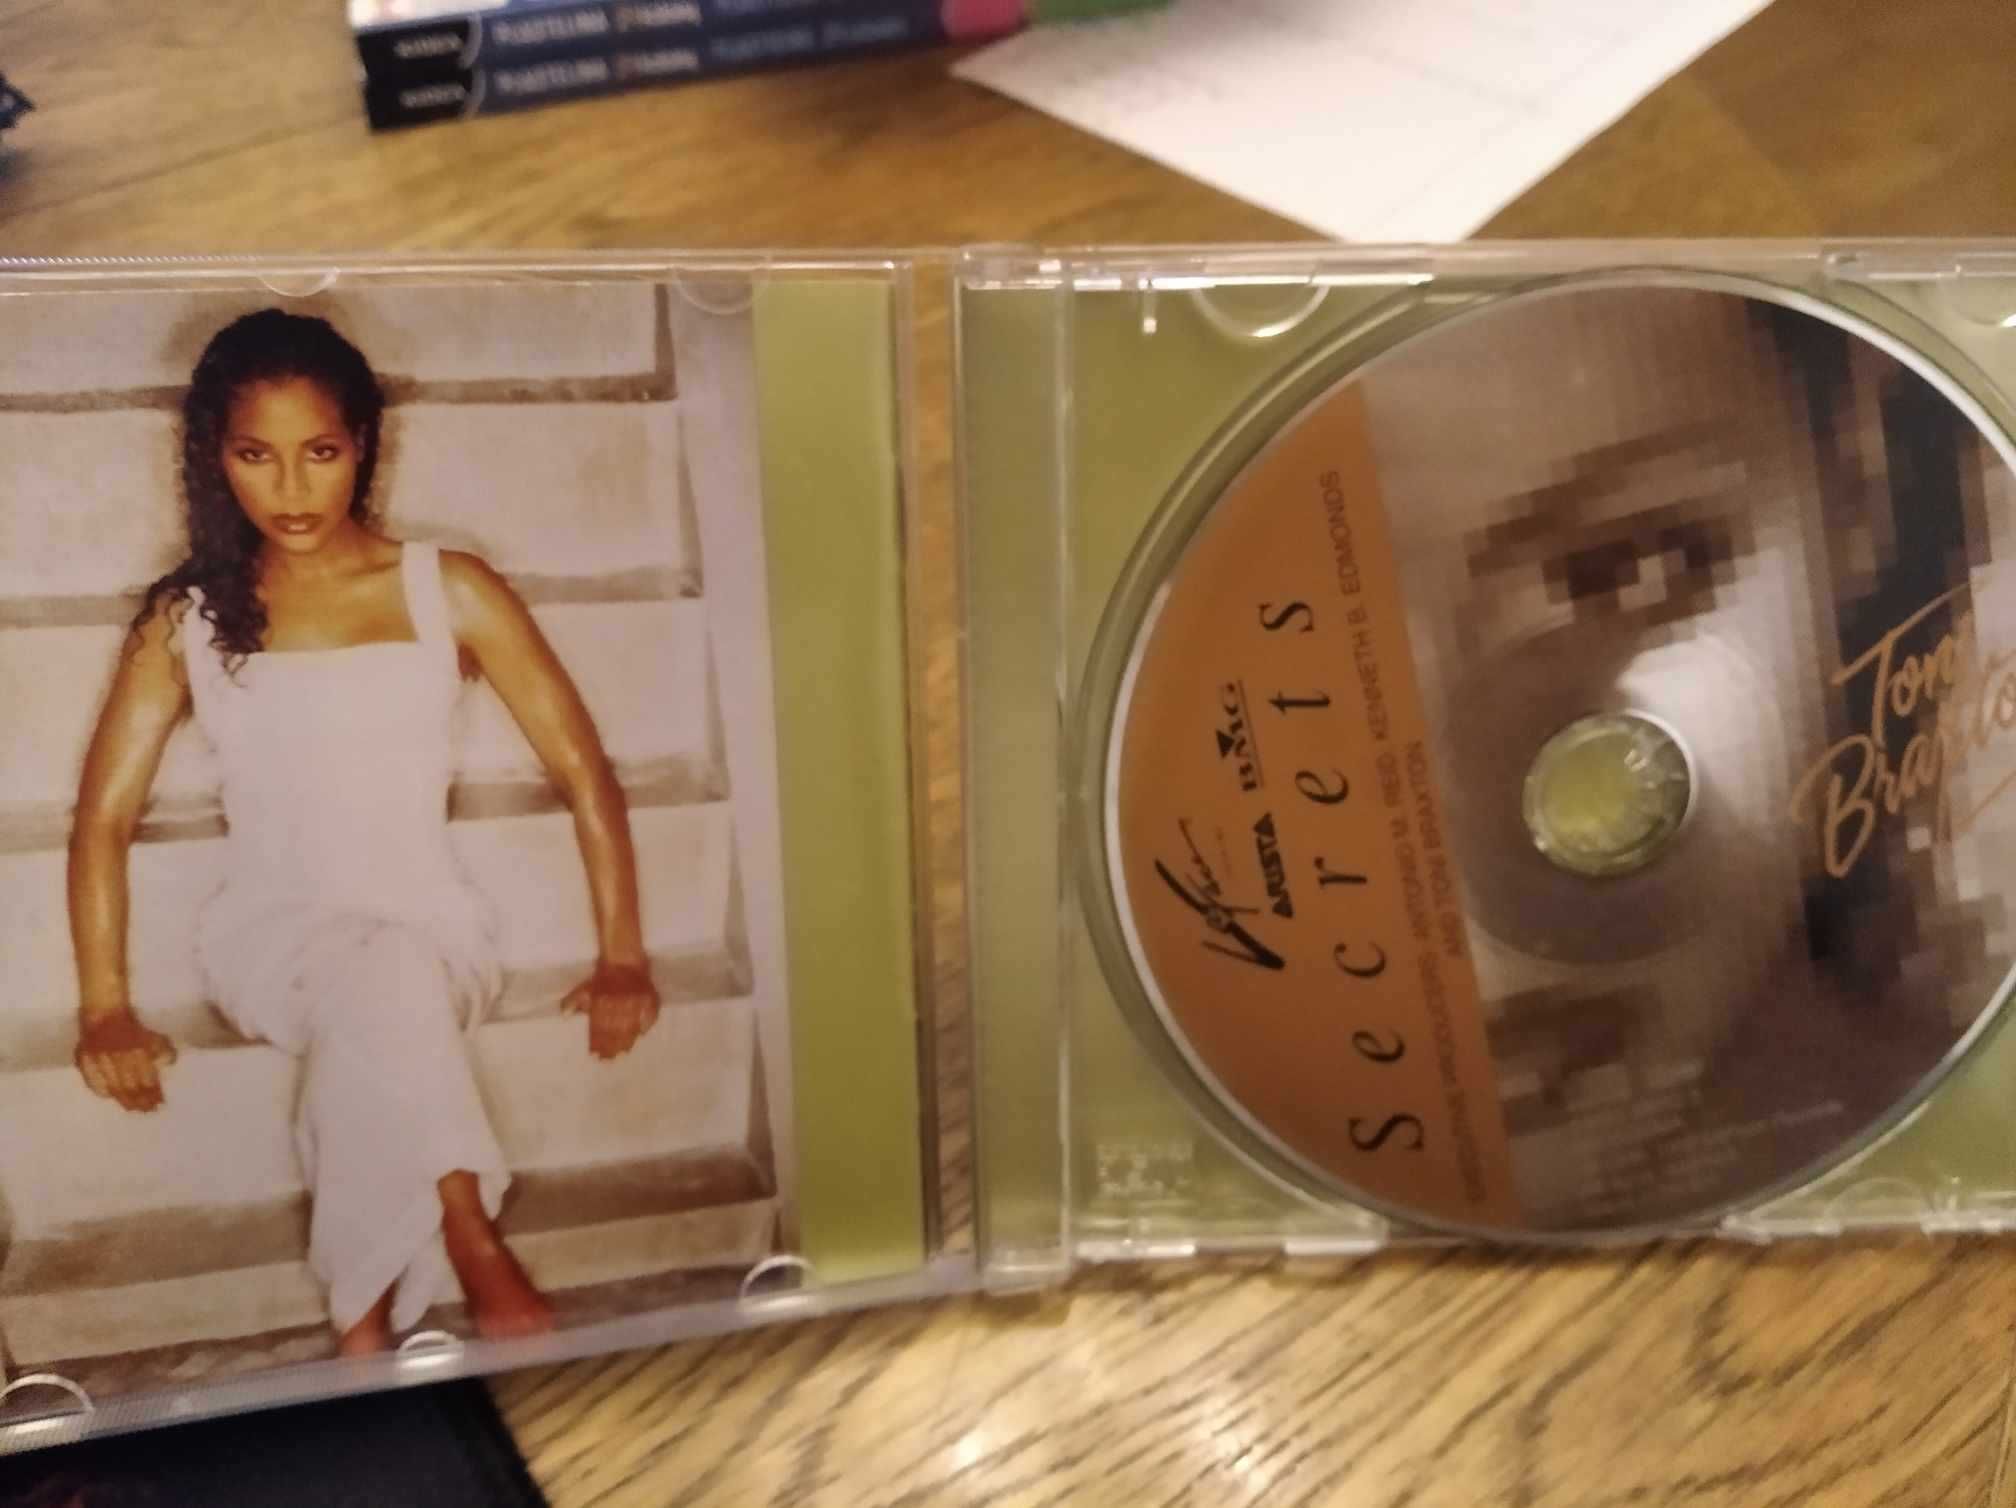 Sprzedam płytę CD z piosenkami Toni Braxton " Secrets" oryginalna,nowa